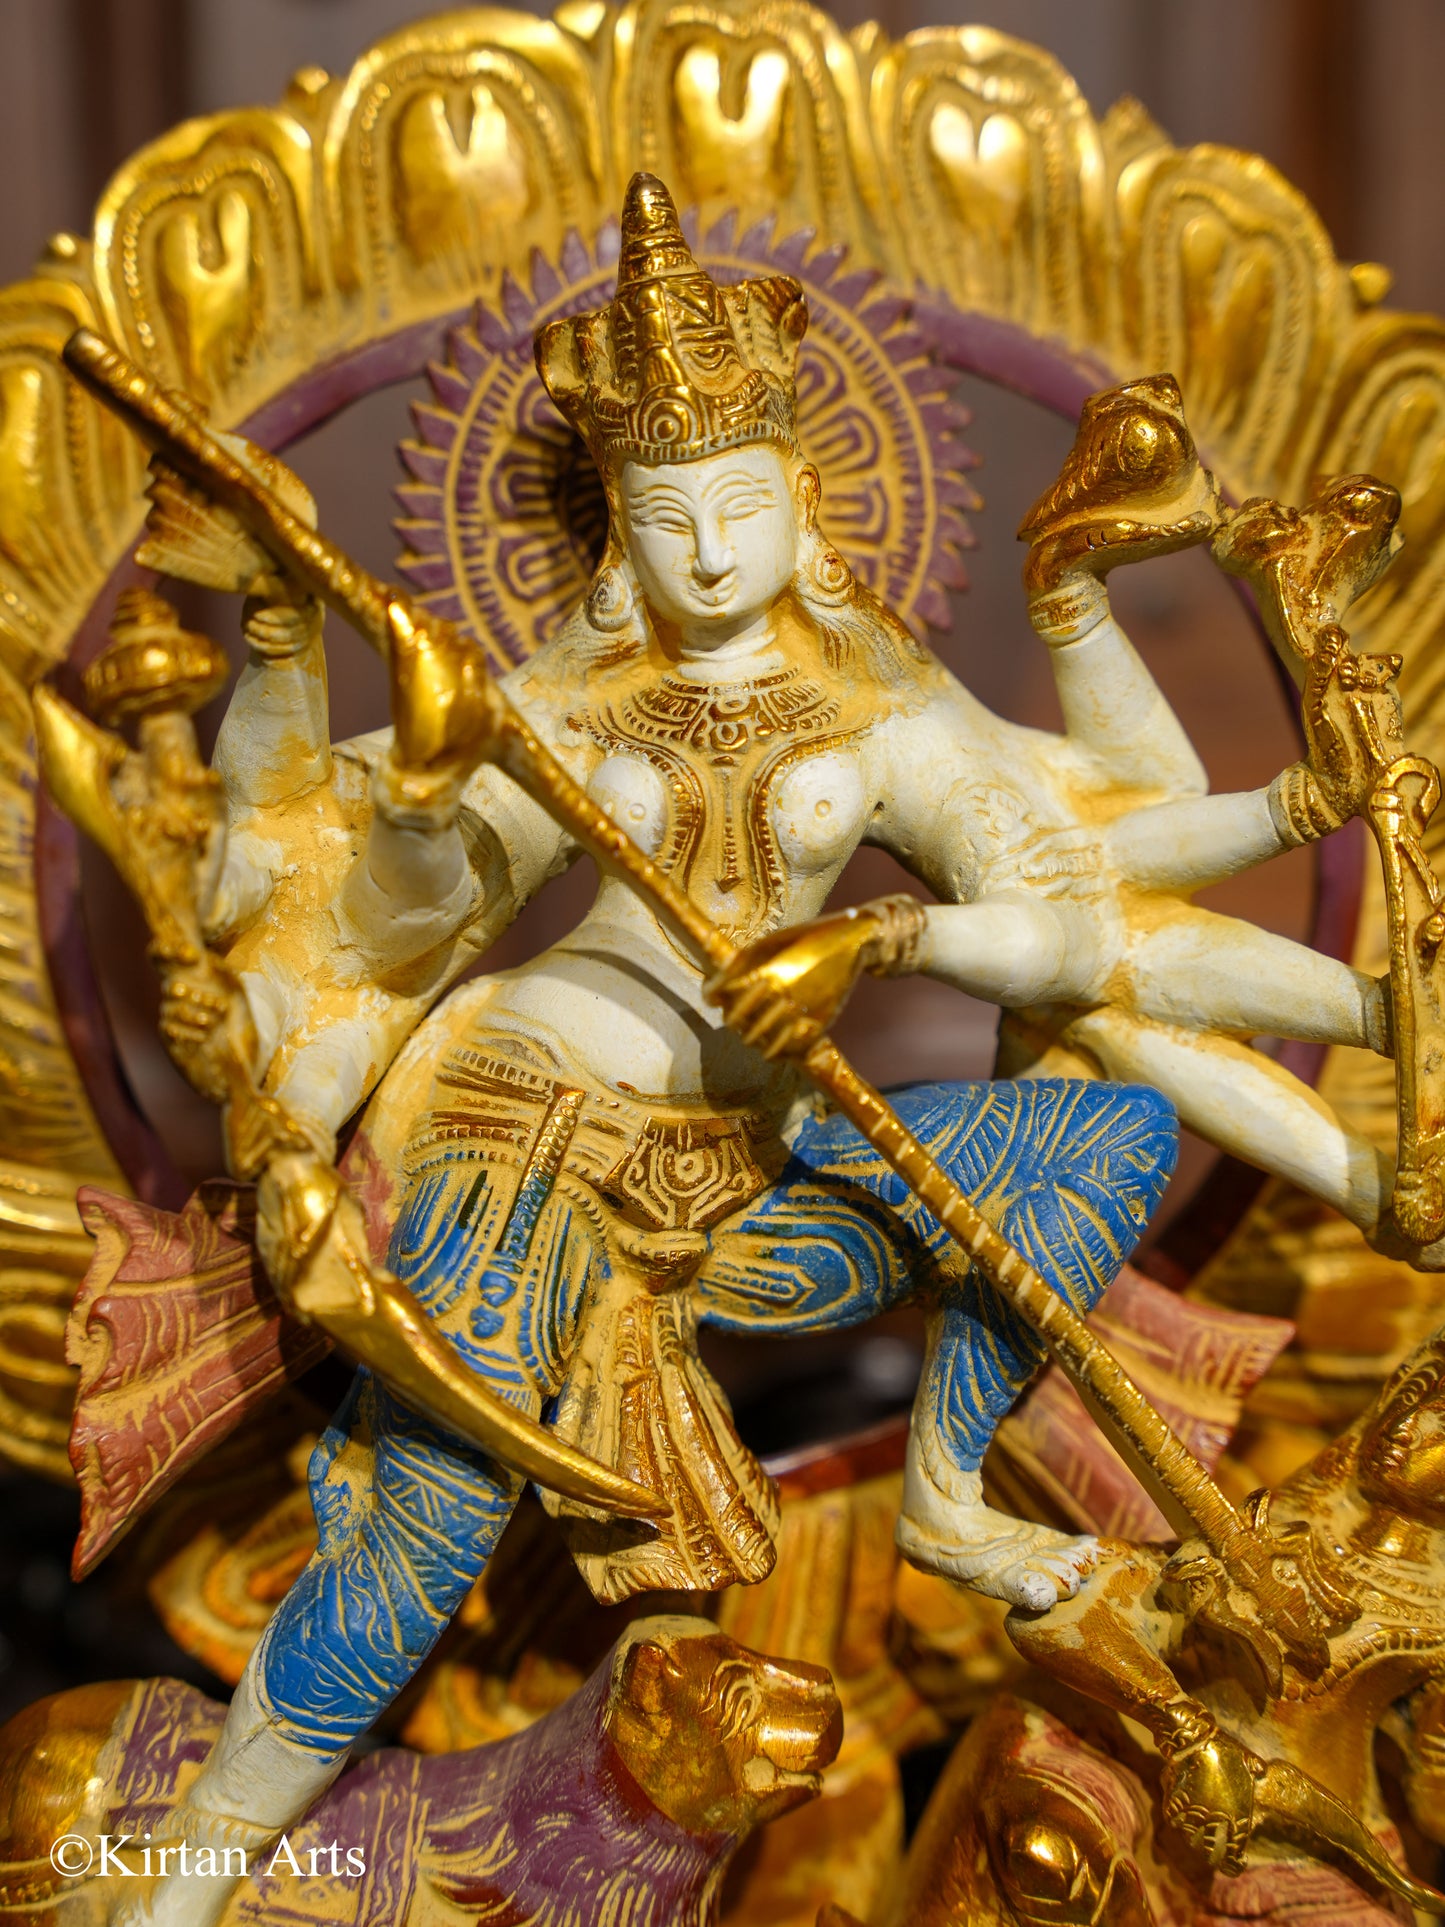 Mahisasur Mardini Durga Brass Idol 12"